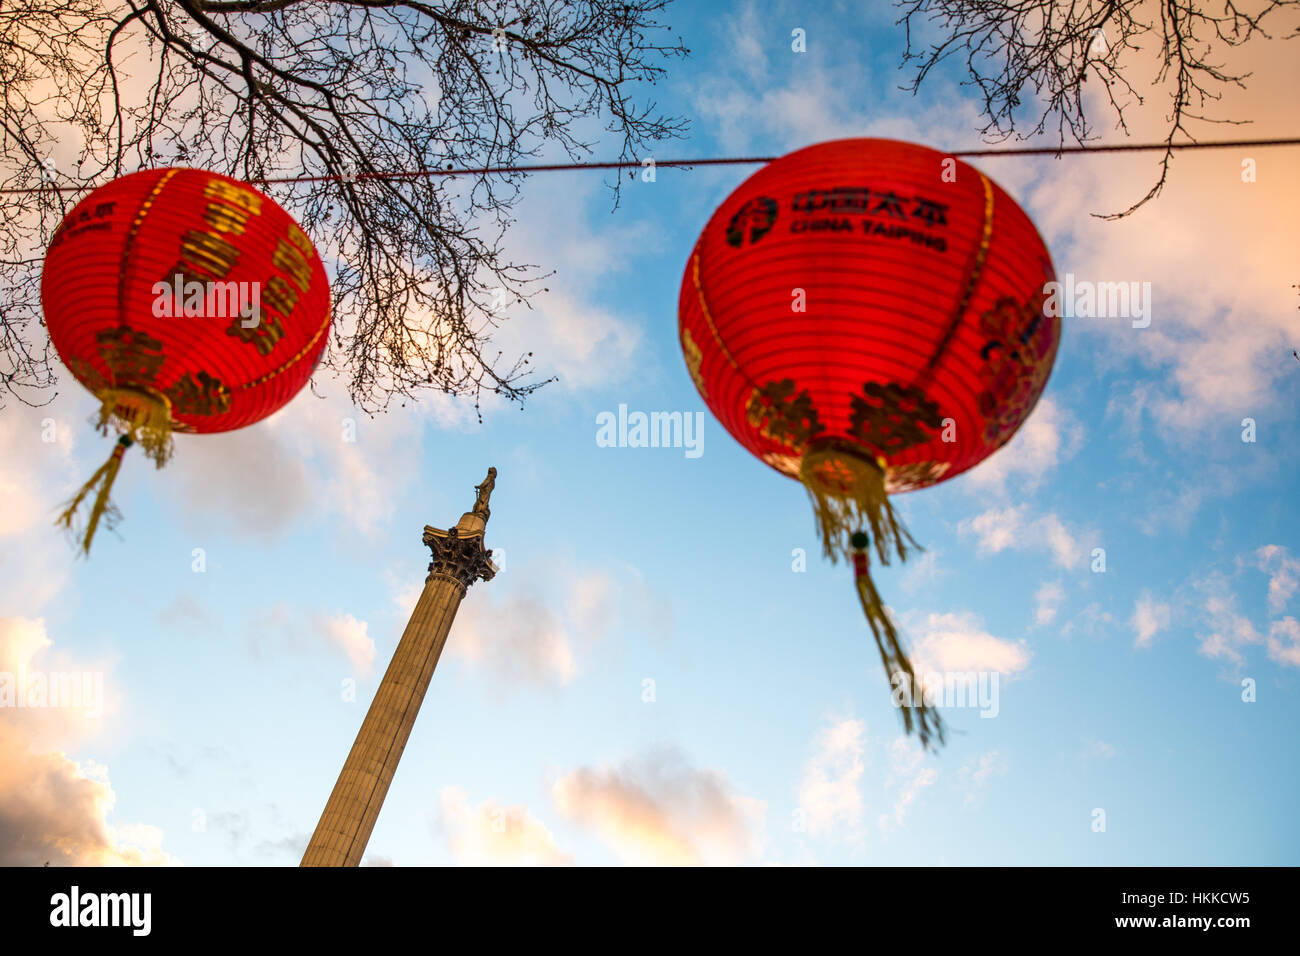 Londres, Reino Unido. 28 ene, 2017. Trafalgar Square está listo para el nuevo año chino del Gallo celebraciones. Crédito: carolmoir/Alamy Live News Foto de stock